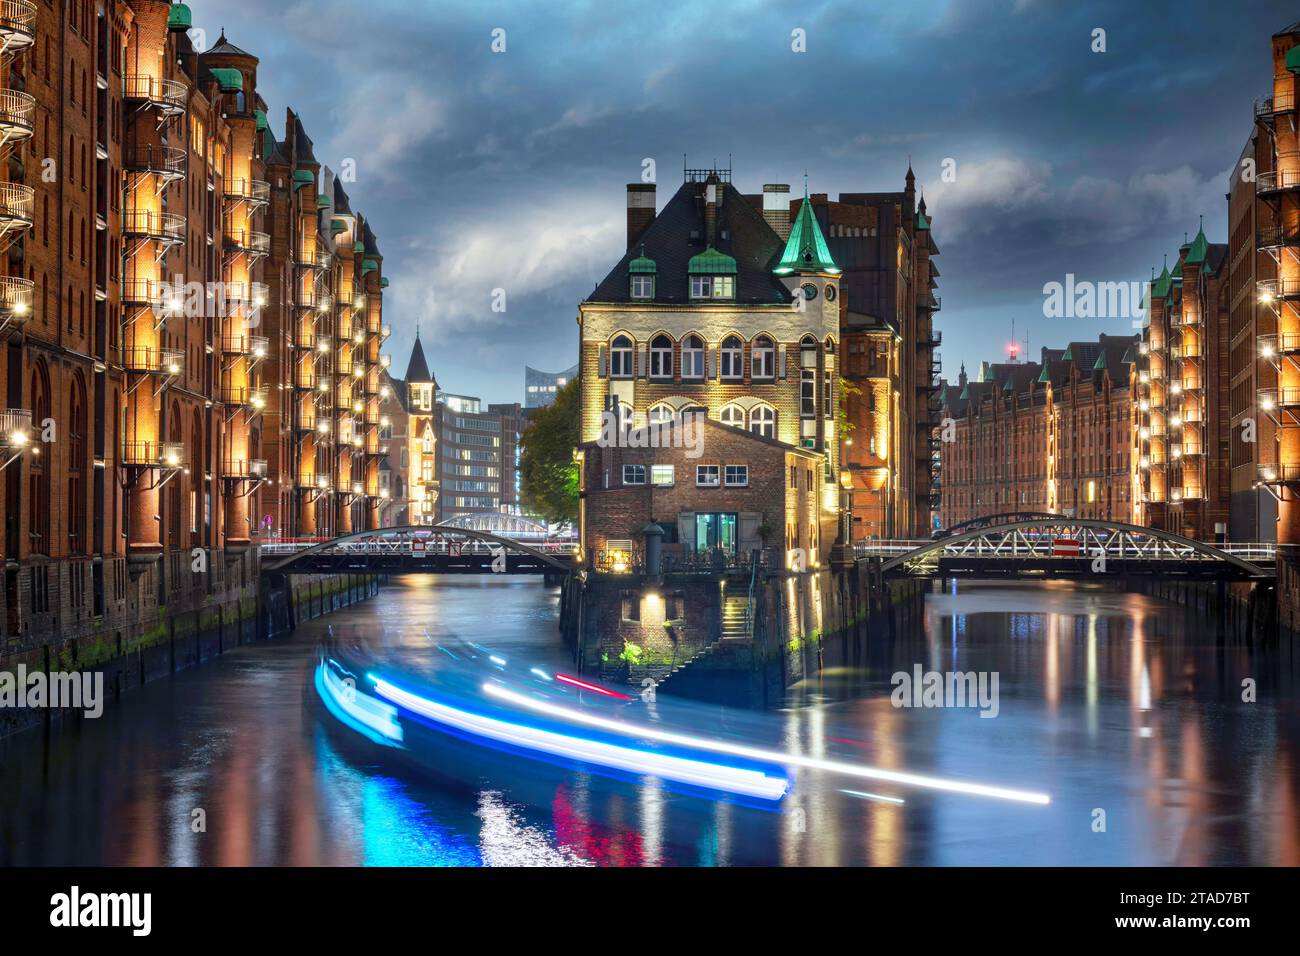 Castello illuminato nel quartiere storico dei magazzini di Amburgo nell'ora blu dopo il tramonto Foto Stock